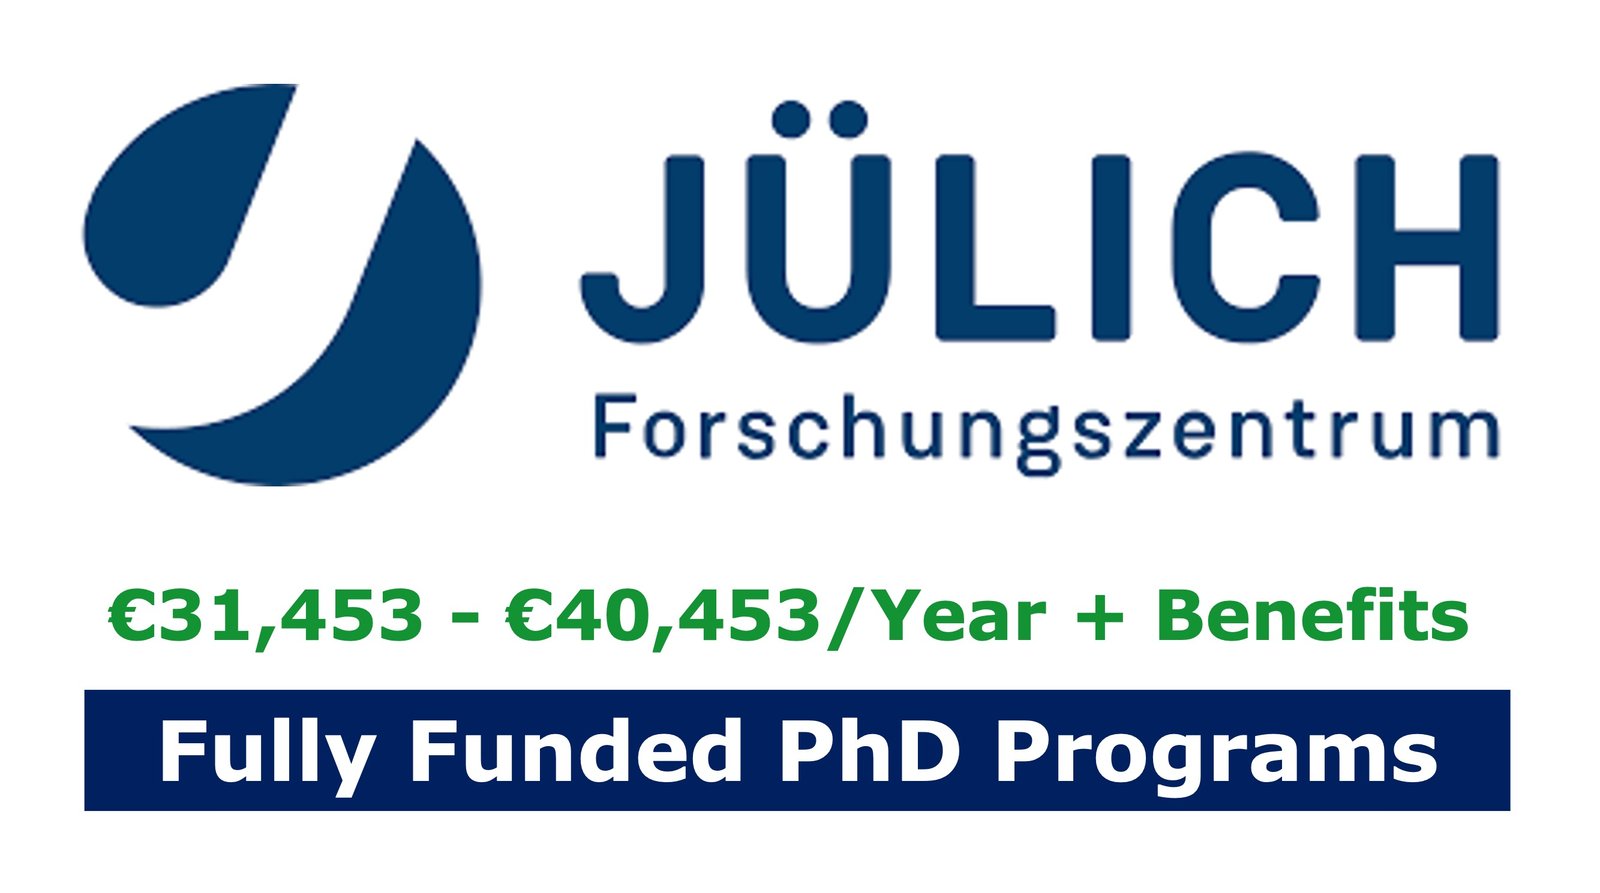 funded phd programs in german